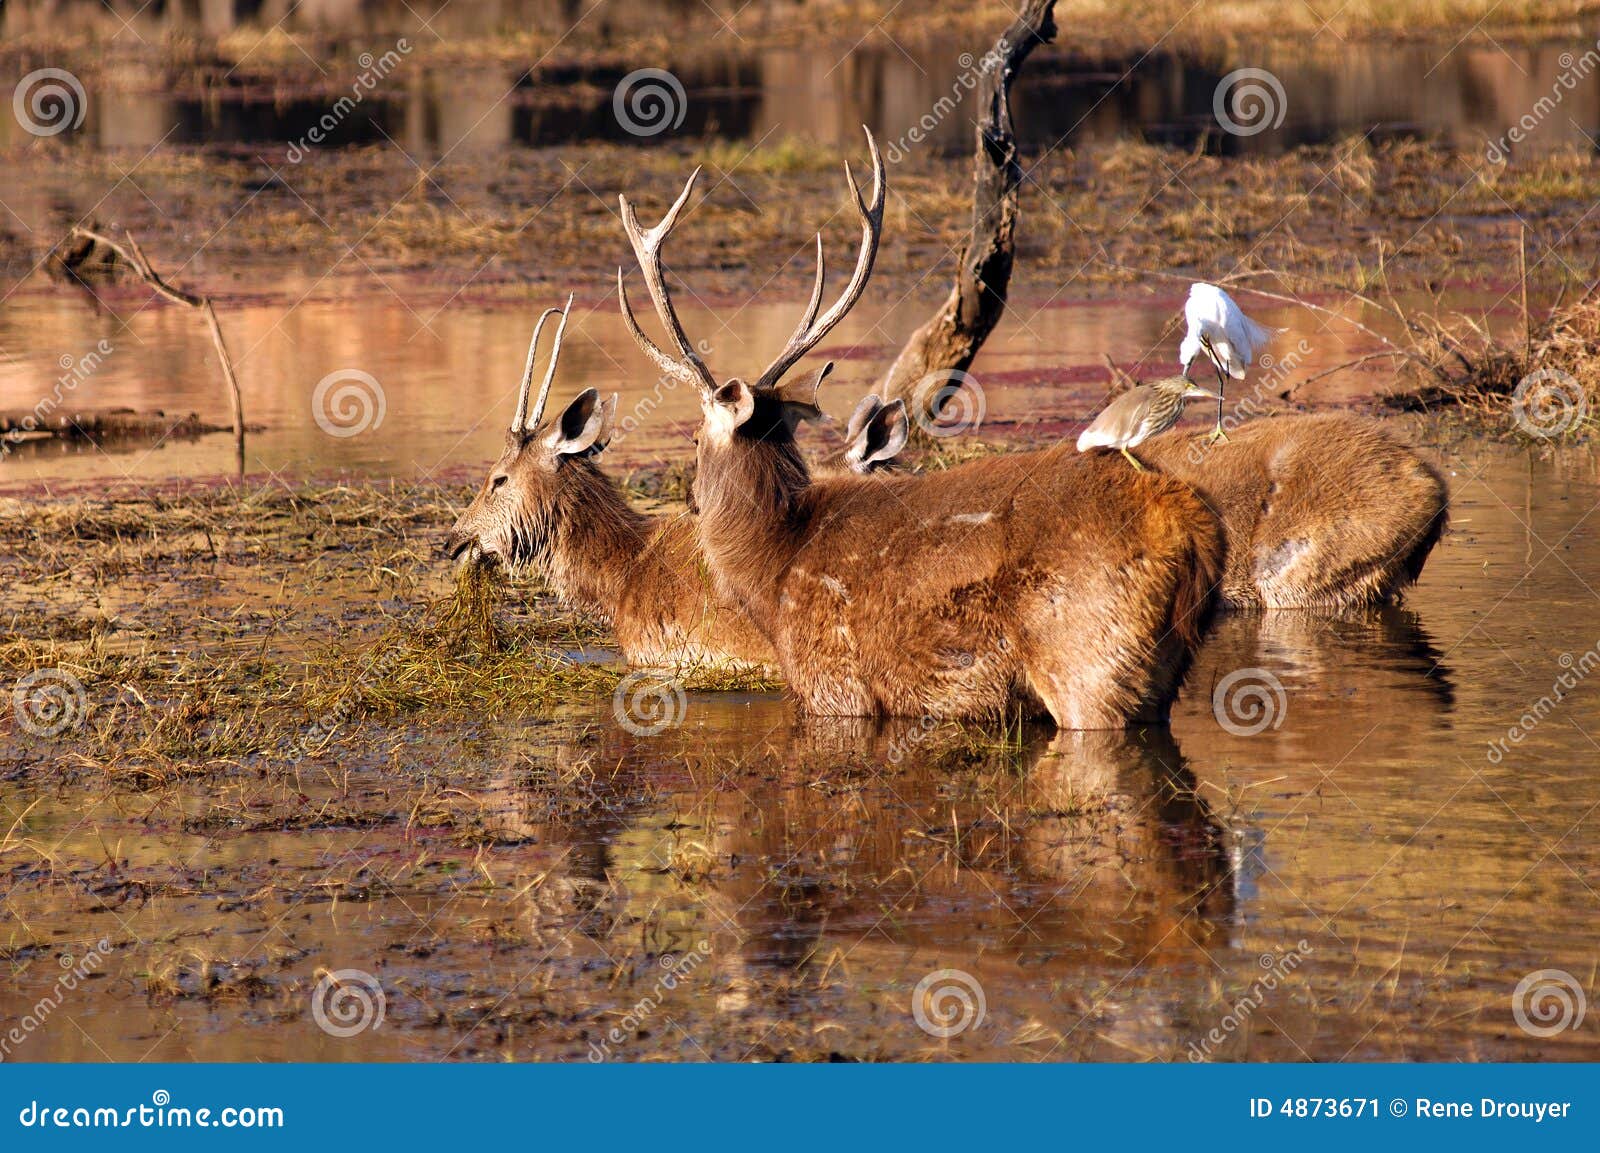 india, ranthambore: deers